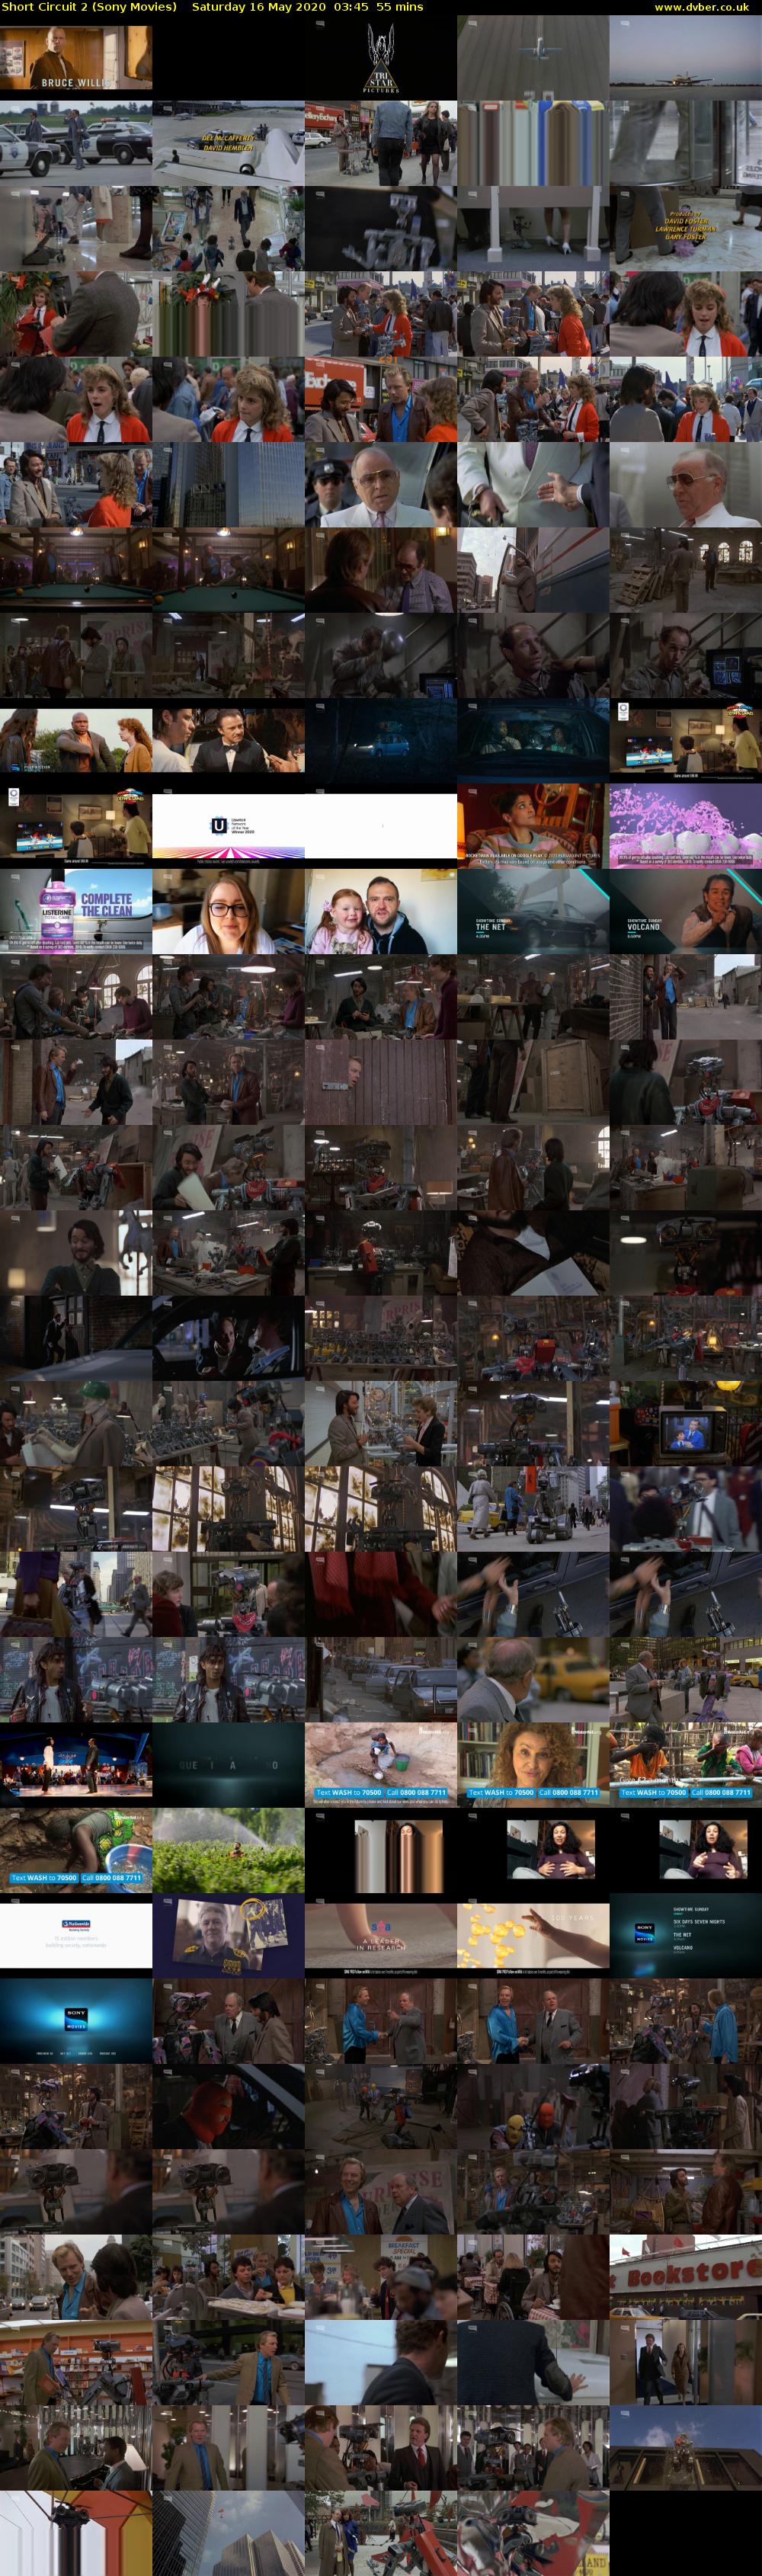 Short Circuit 2 (Sony Movies) Saturday 16 May 2020 03:45 - 04:40